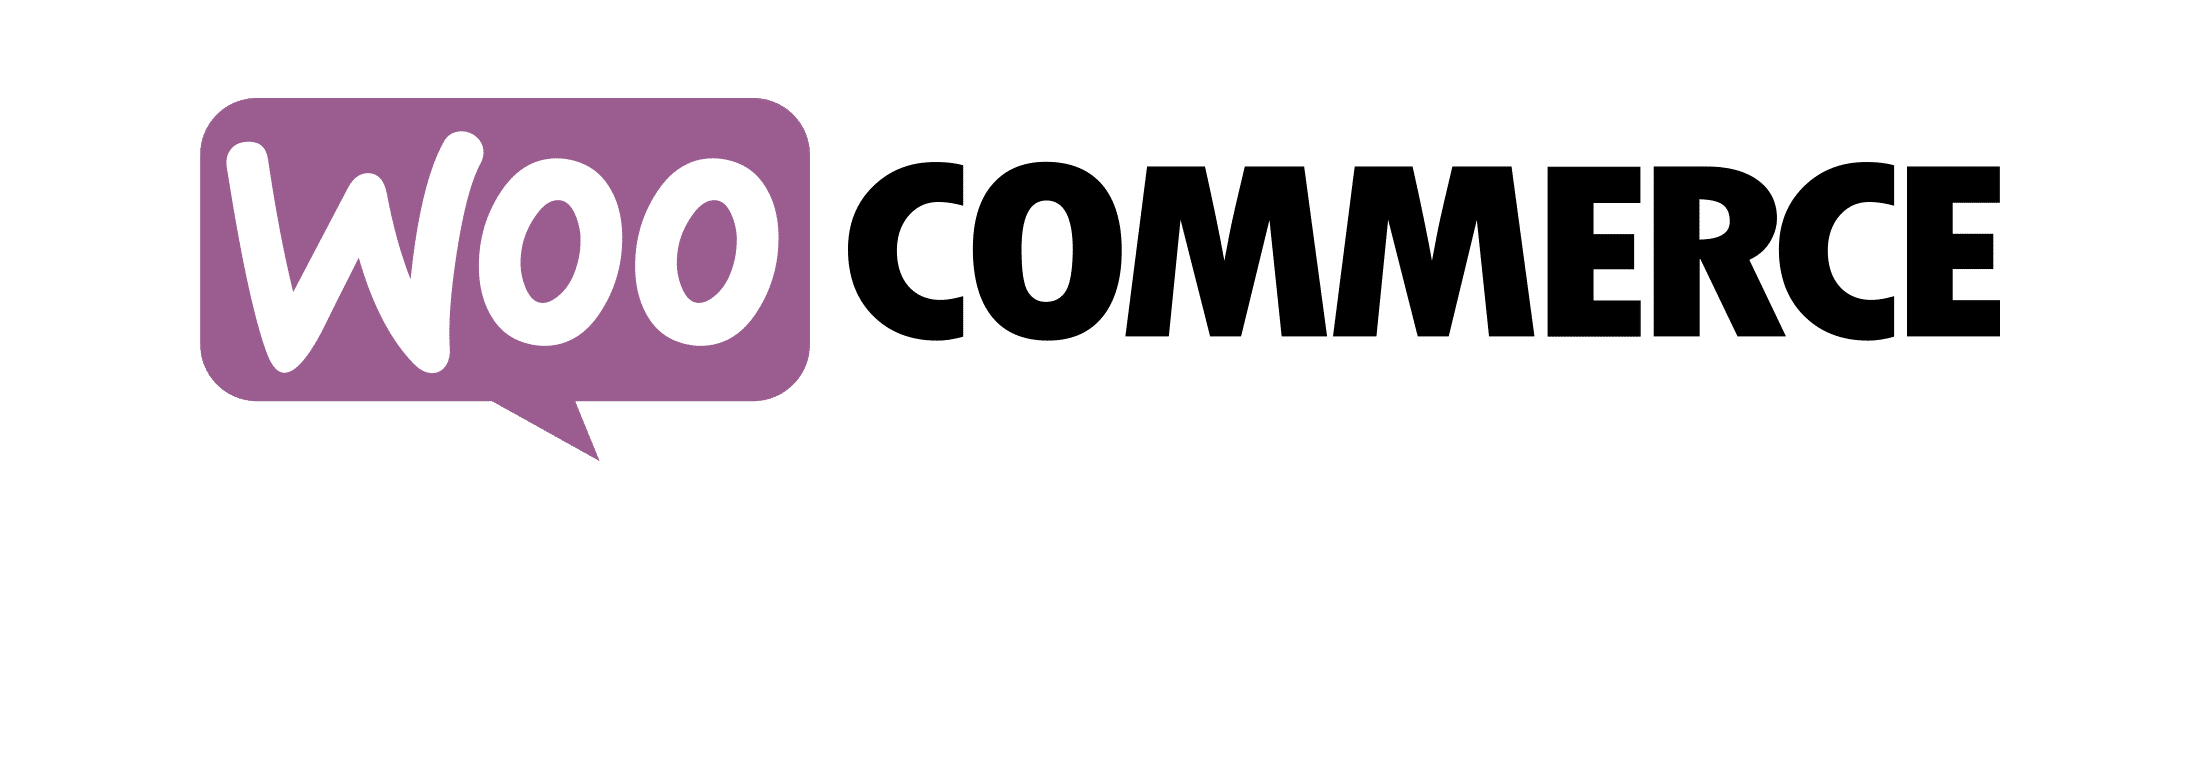 woocommerce logo e1603816135303 - Glop Software TPV